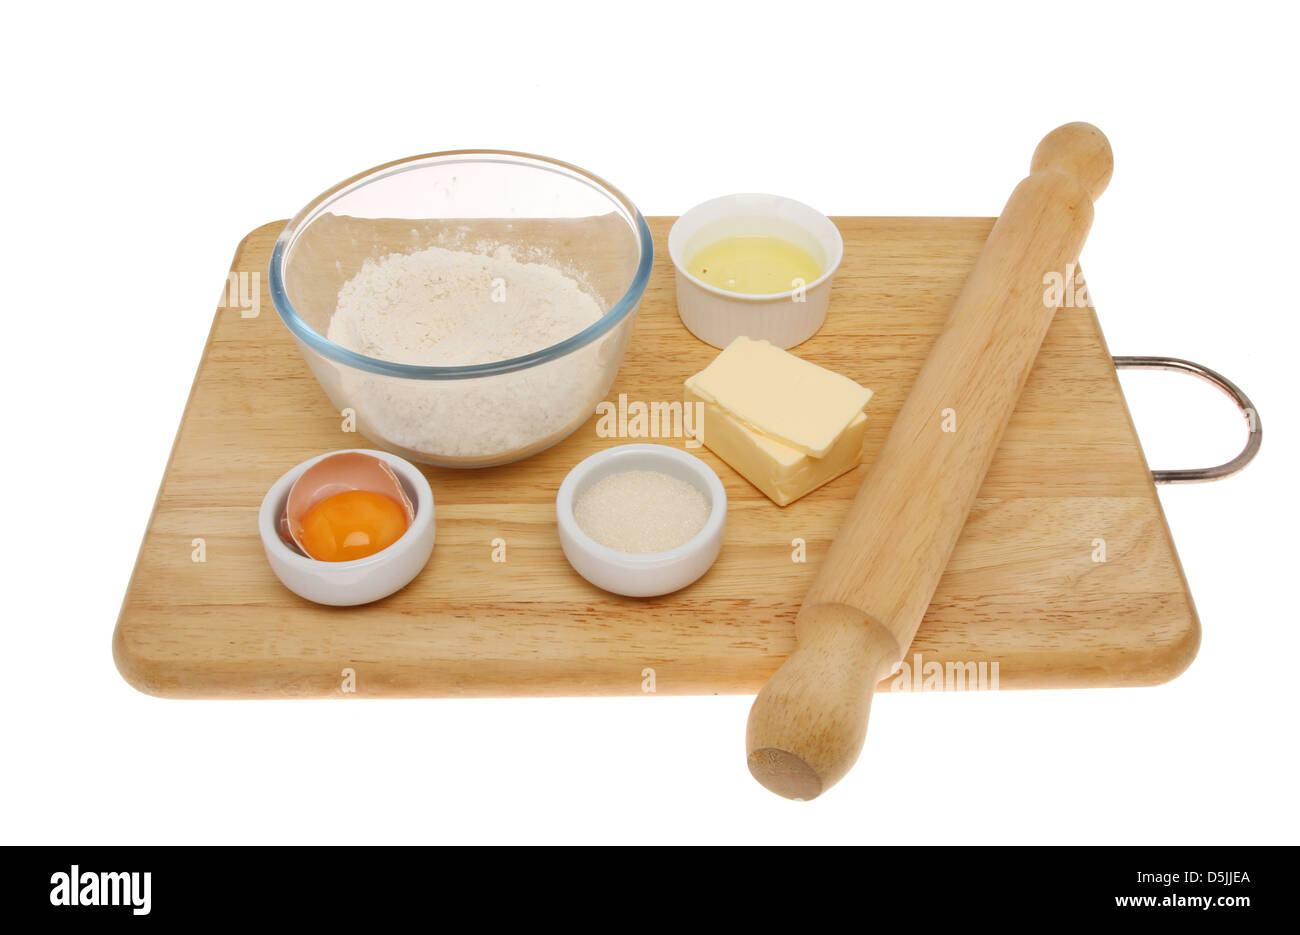 Ingrédients pour faire de la pâtisserie et d'un rouleau à pâtisserie sur une planche en bois isolés contre white Banque D'Images